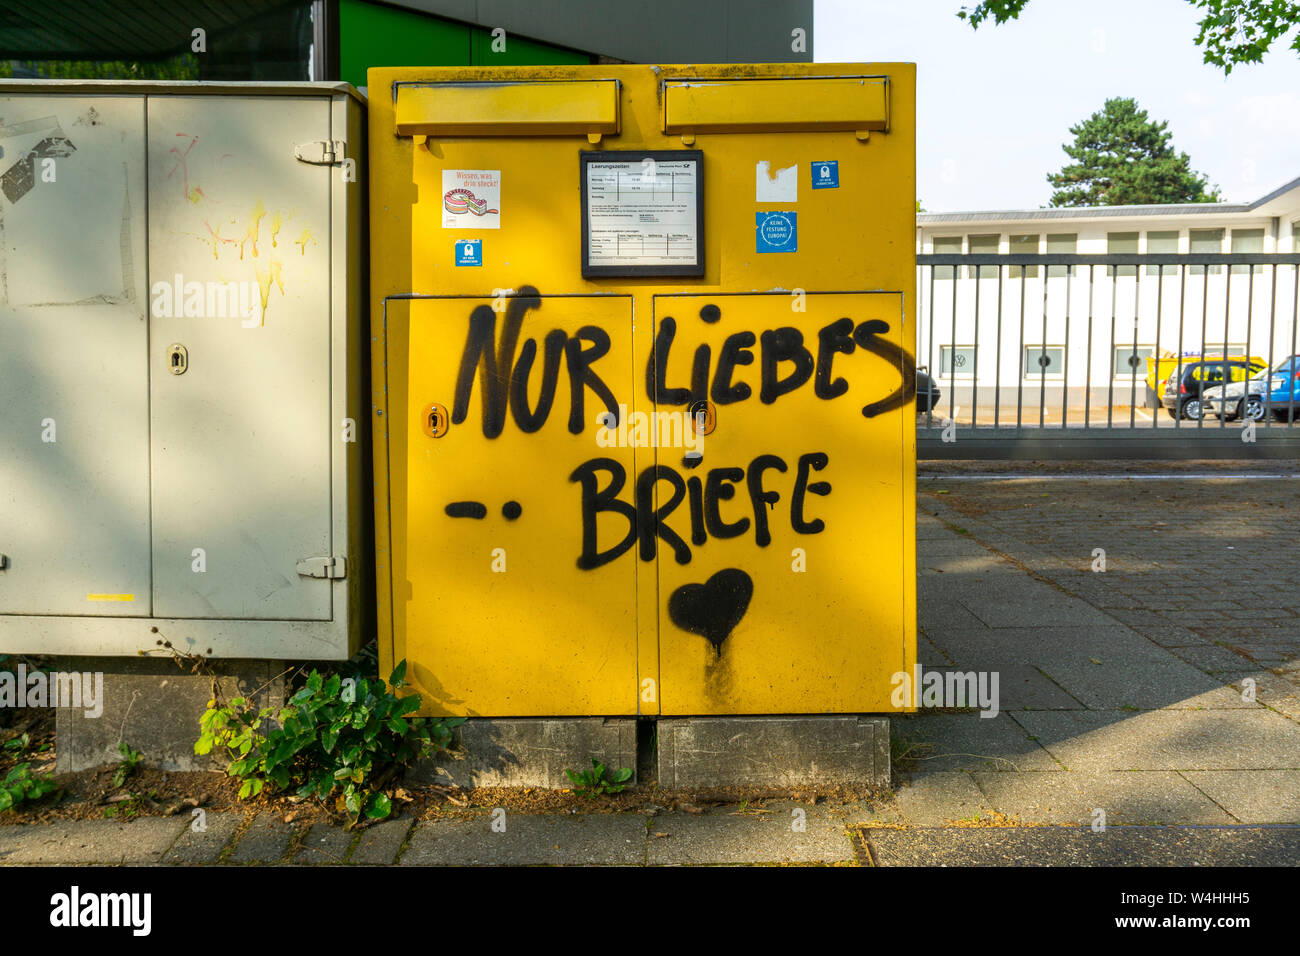 Briefkasten, Postkasten besprüht in einem Spruch, Nur Liebesbriefe, Essen, NRW, Deutschland, Graffiti, Banque D'Images